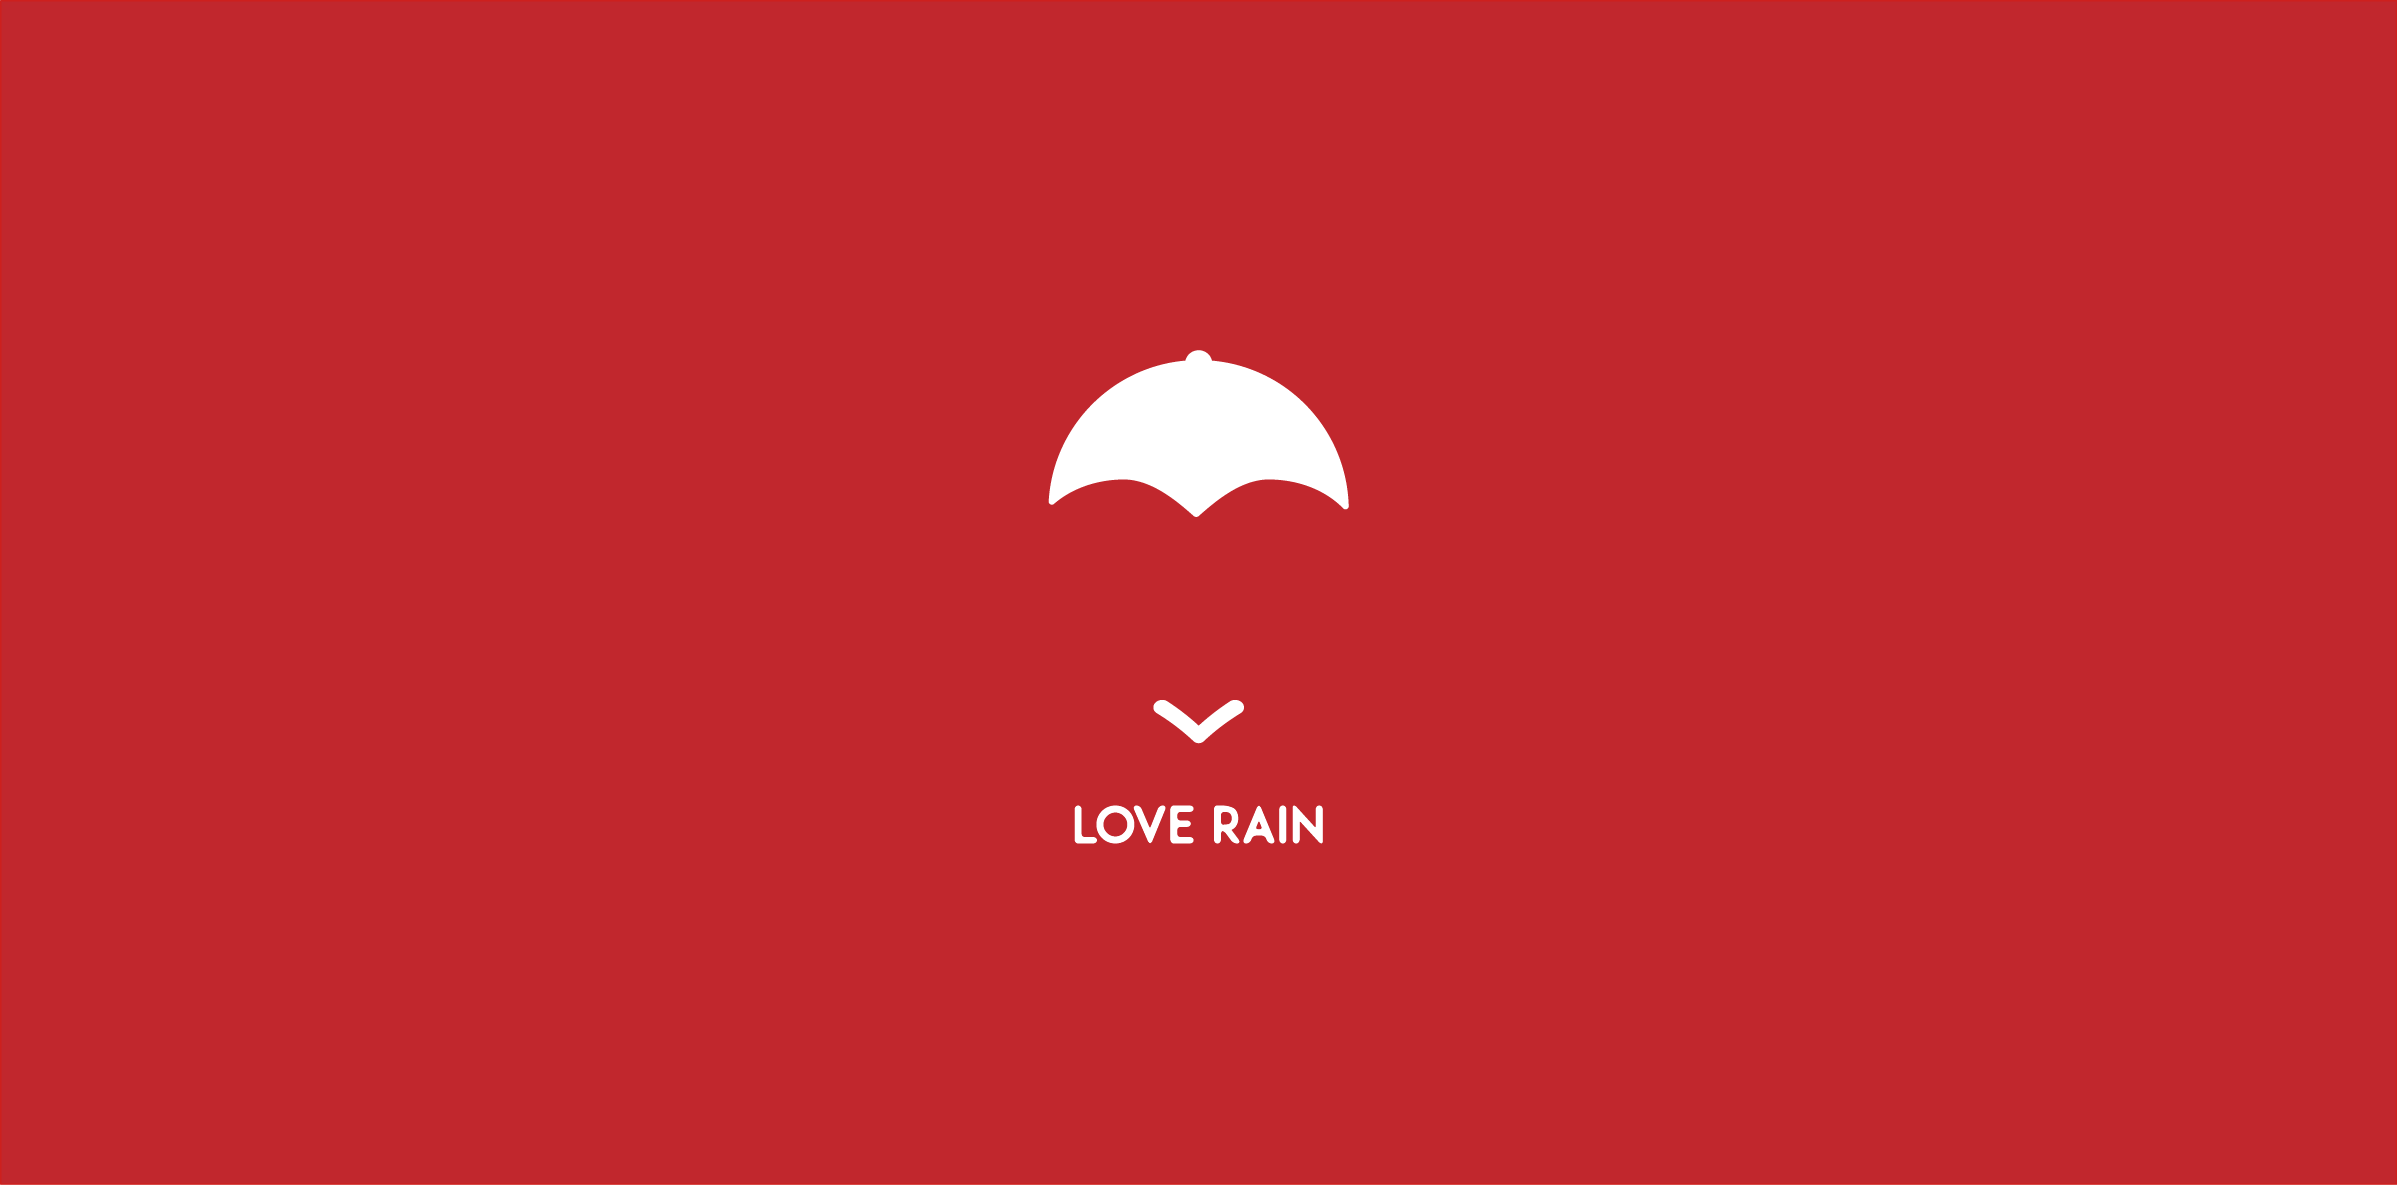 Rainy Logo - RAIN LOVER